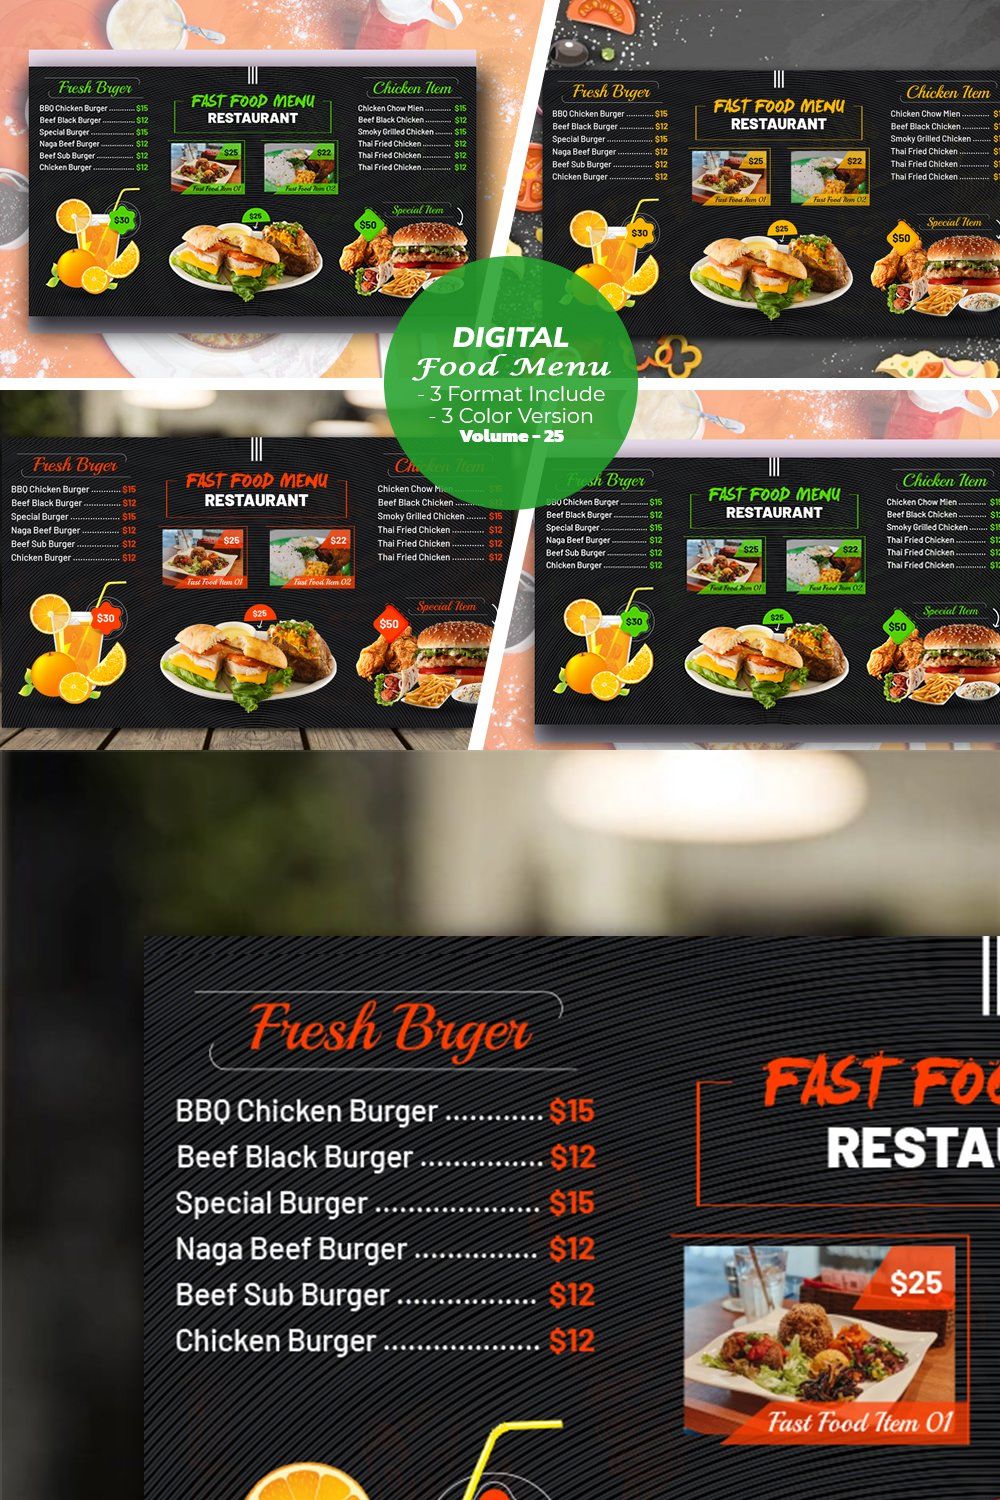 Digital Food Menu Design Template pinterest preview image.